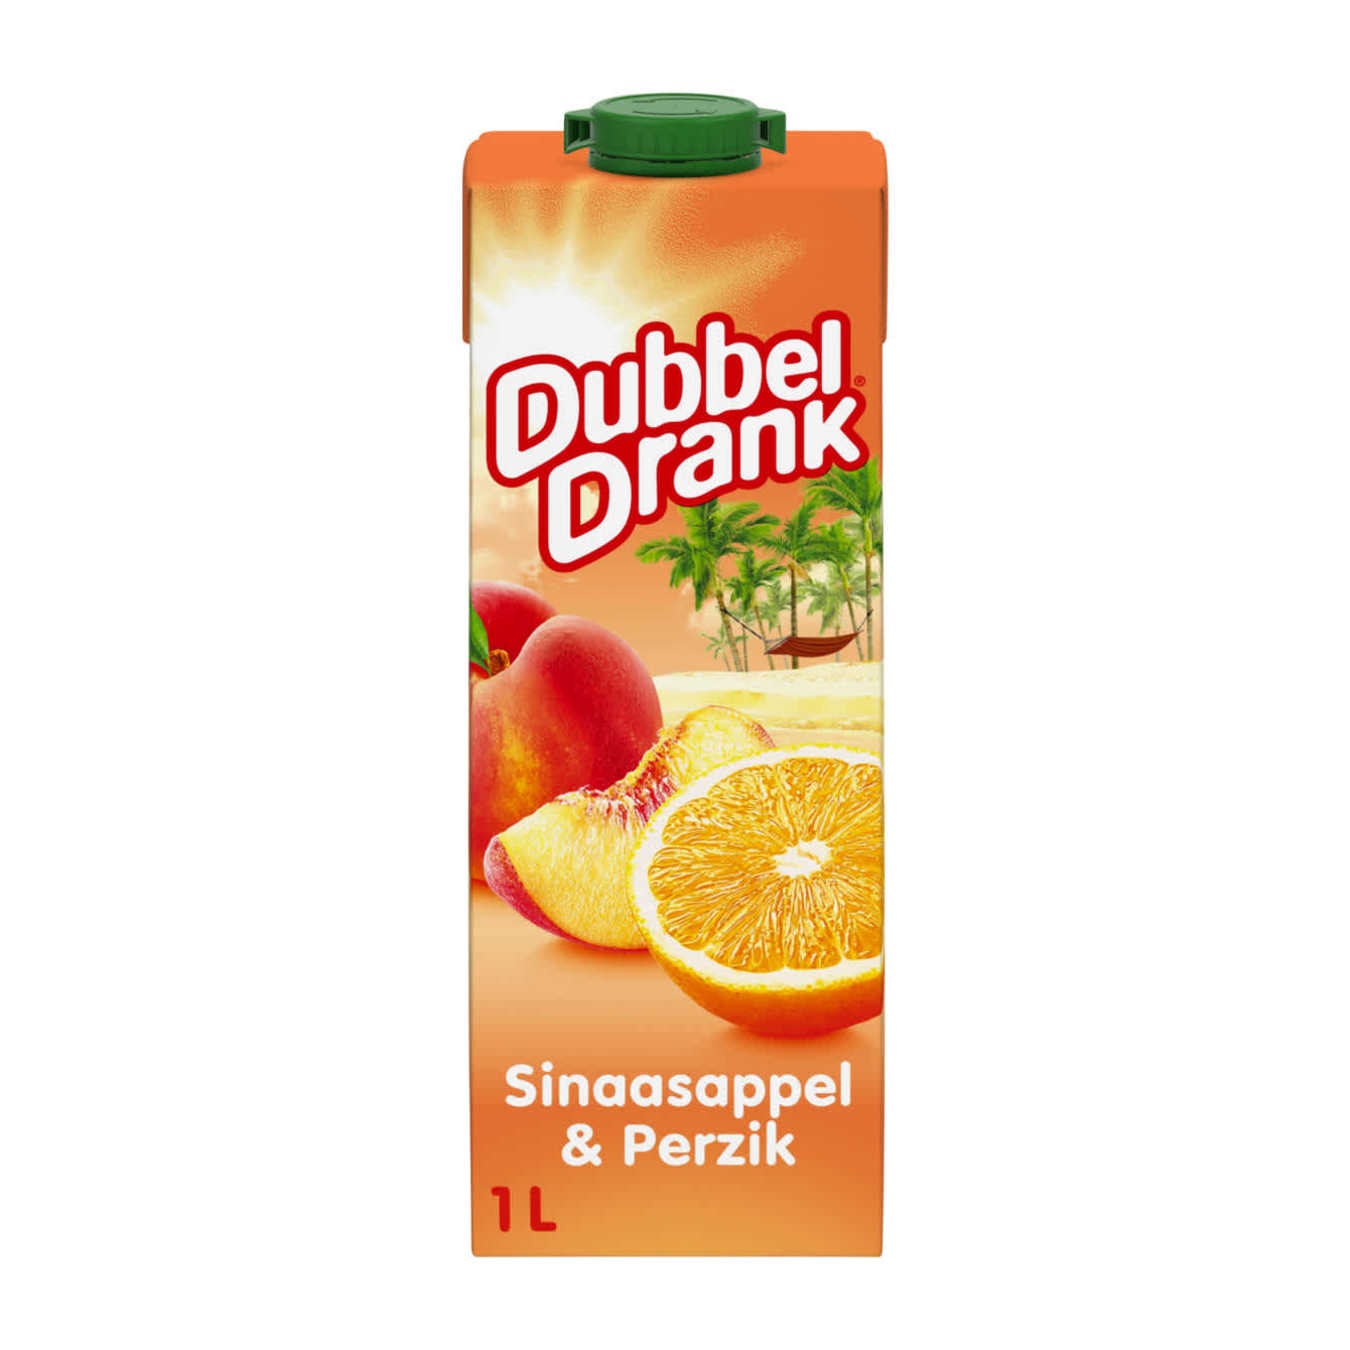 Dubbeldrank Sinaasappel & Perzik